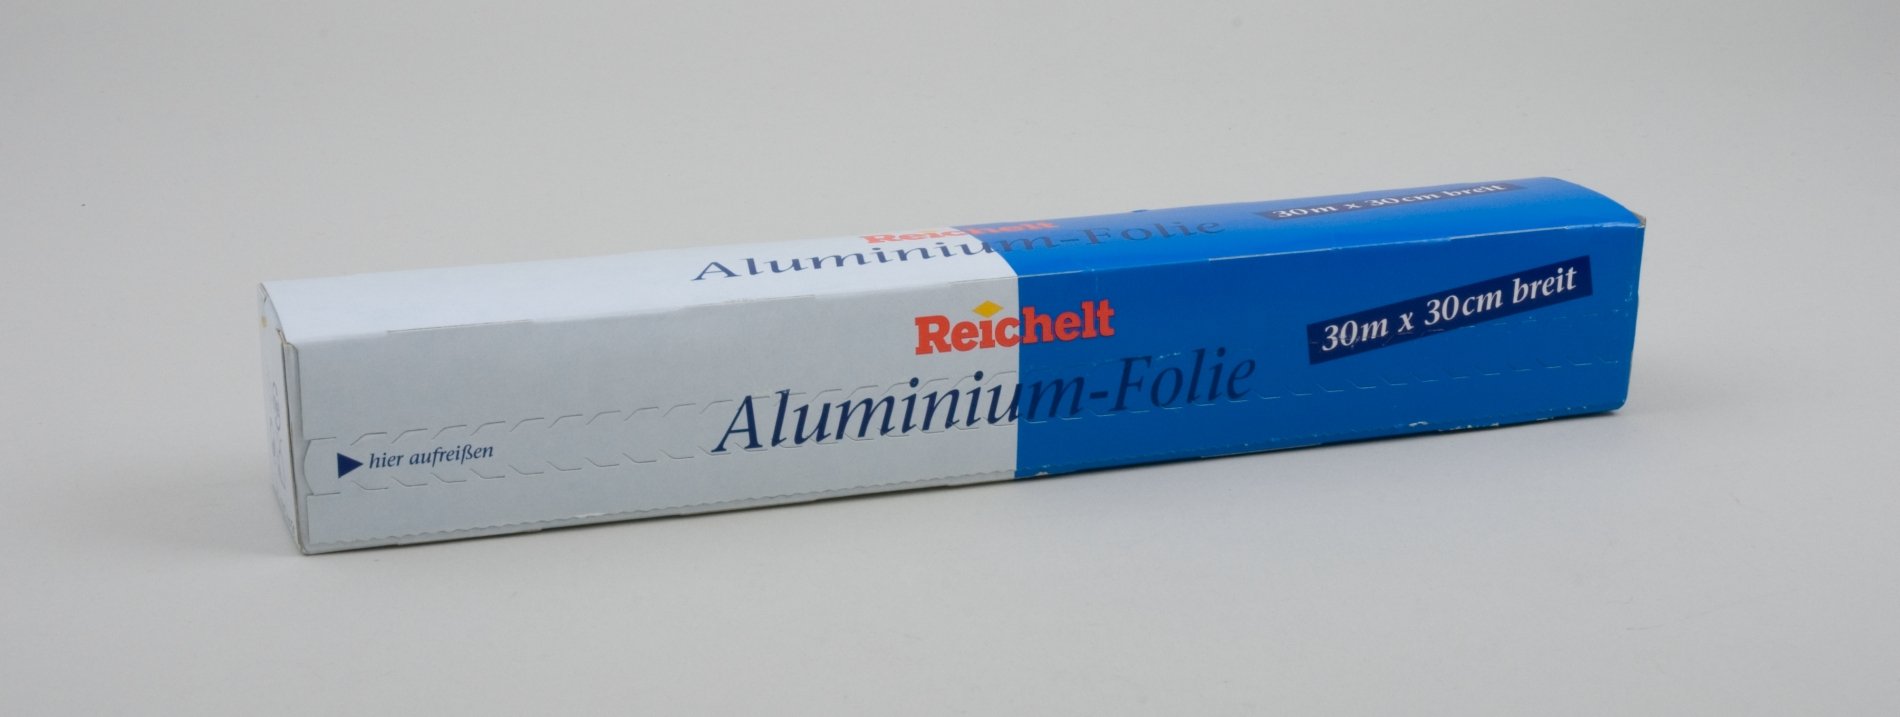 Verpackung "Aluminium-Folie" der "Reichelt" - Eigenmarke (Stiftung Domäne Dahlem - Landgut und Museum, Weiternutzung nur mit Genehmigung des Museums CC BY-NC-SA)